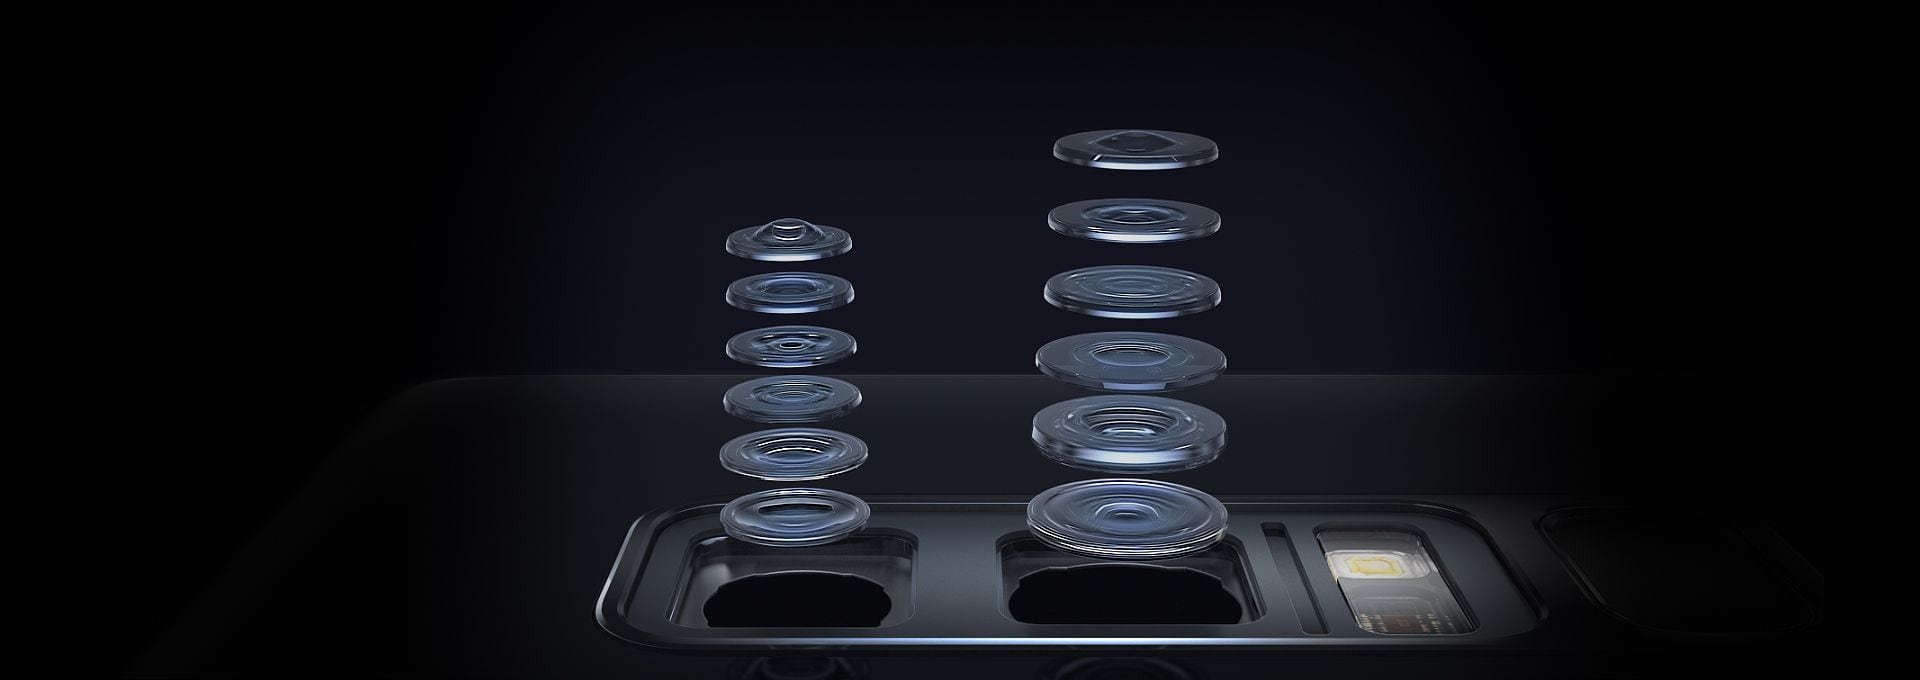 Samsung Galaxy S9: kilenc új funkcióval